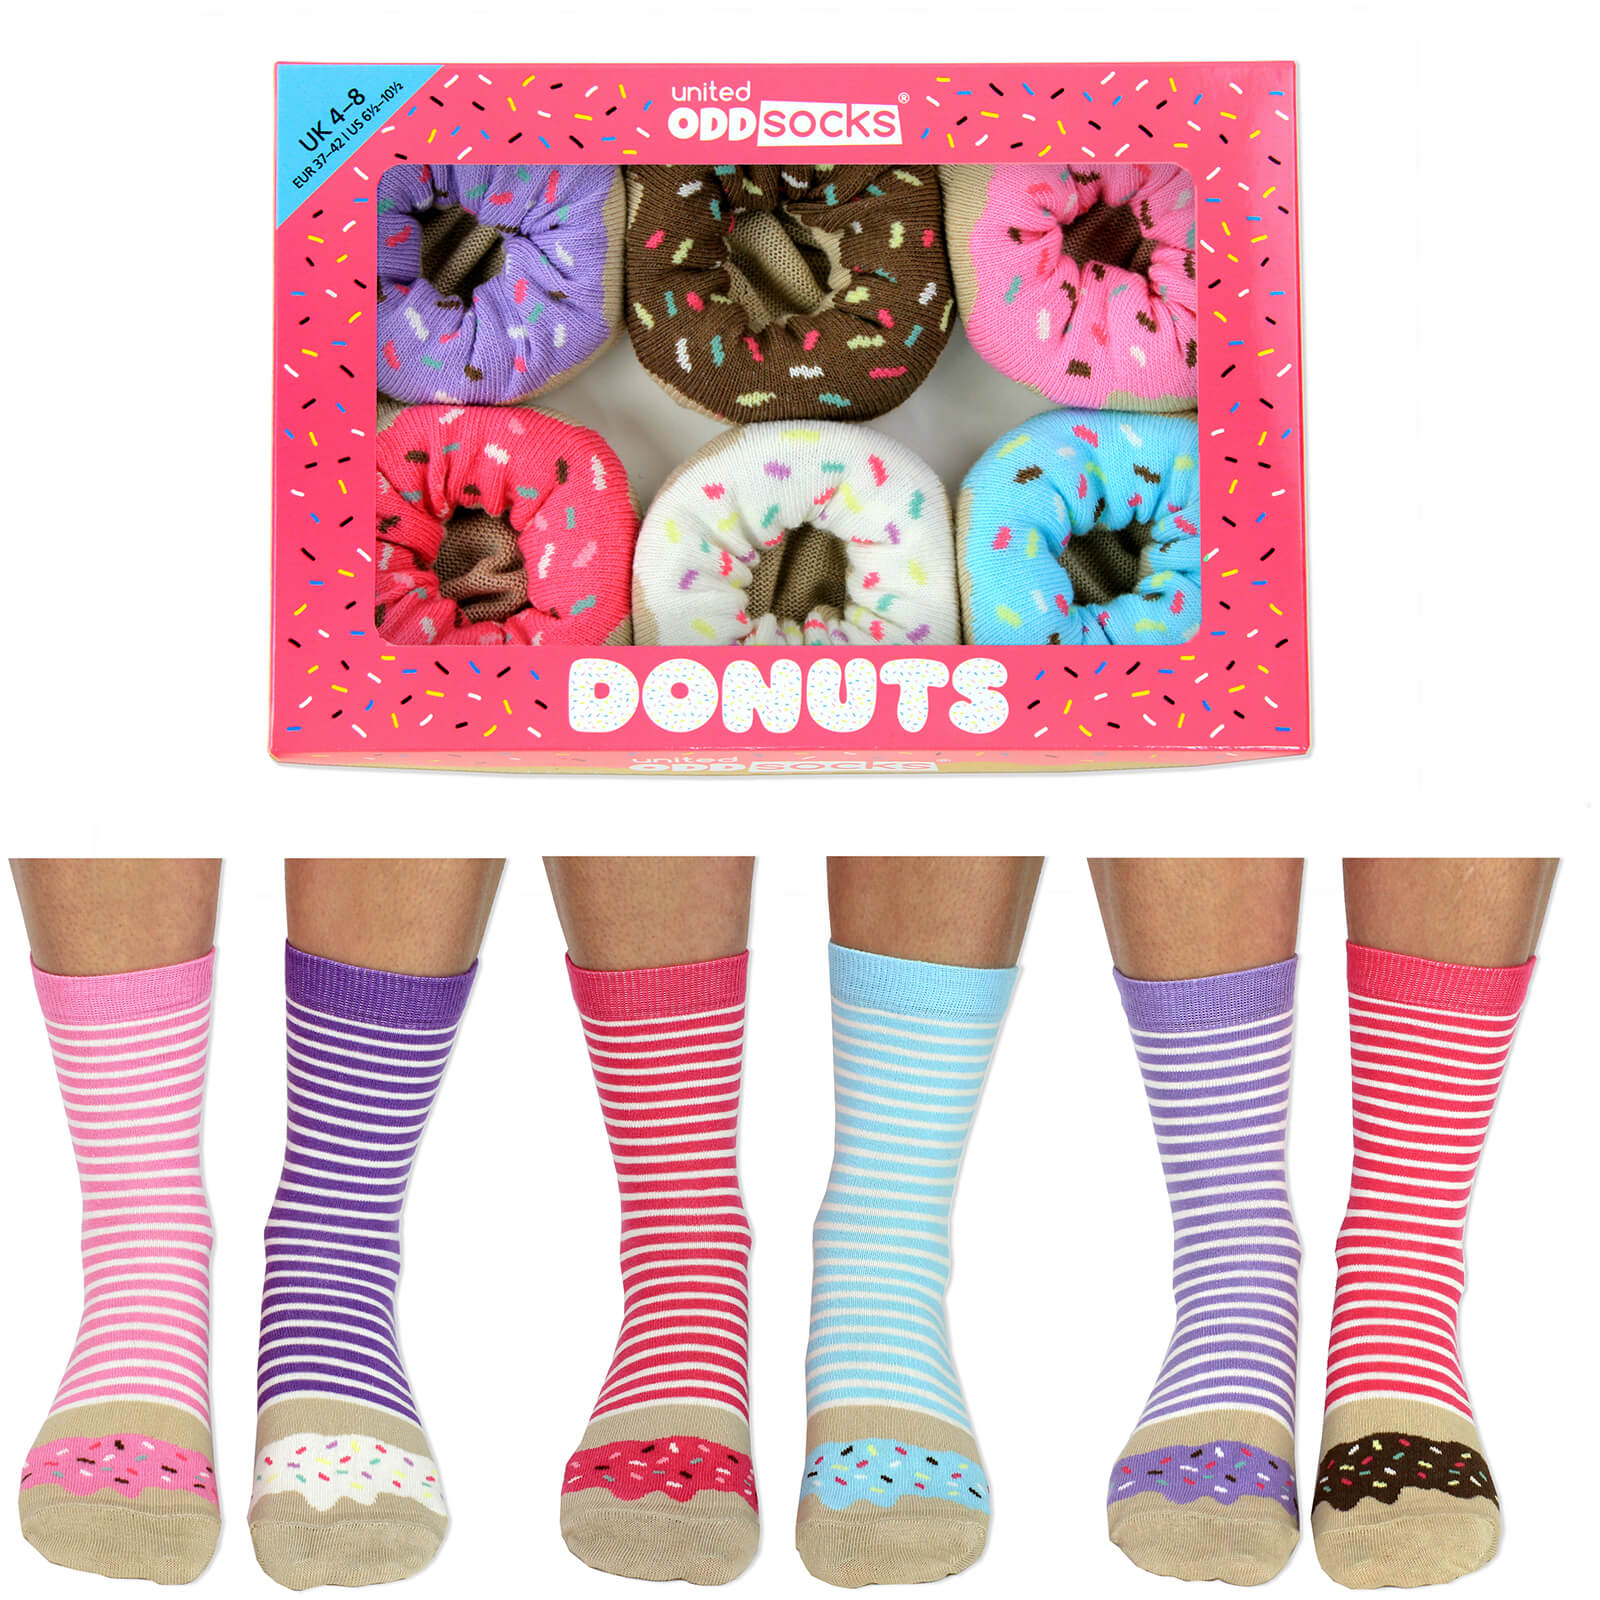 United Oddsocks Women's Donut Socks Gift Box